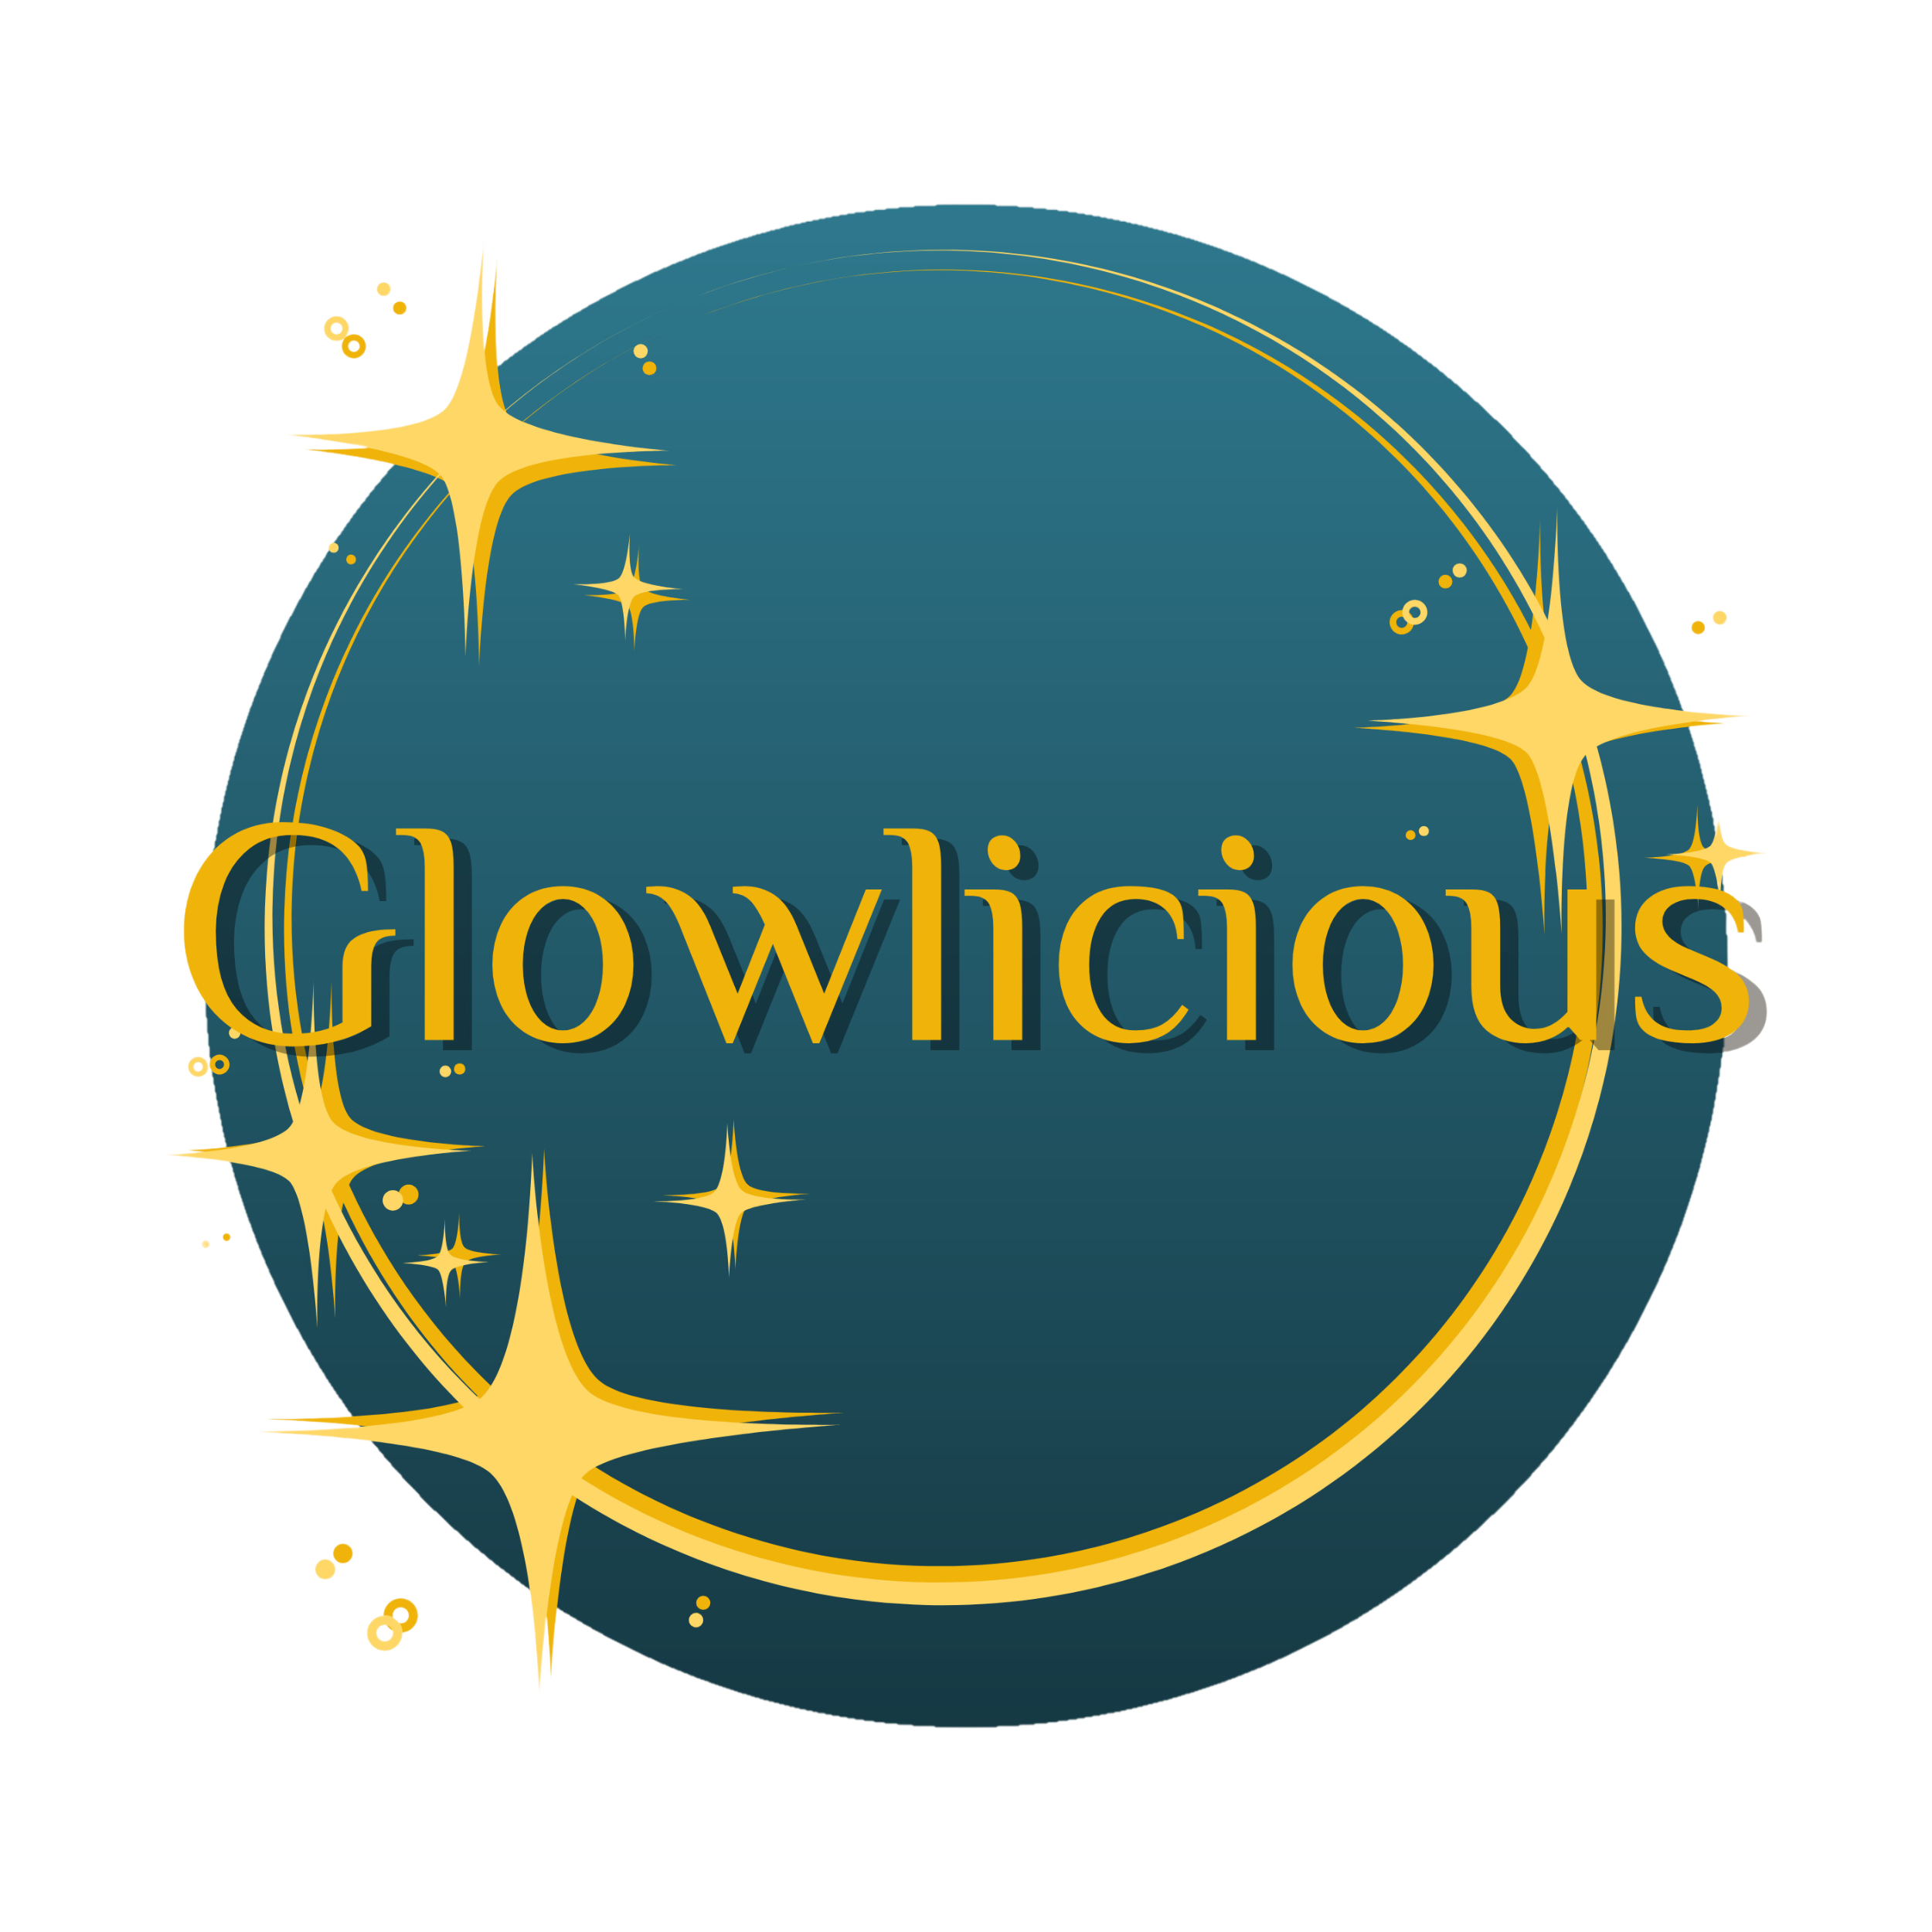 Glowlicious